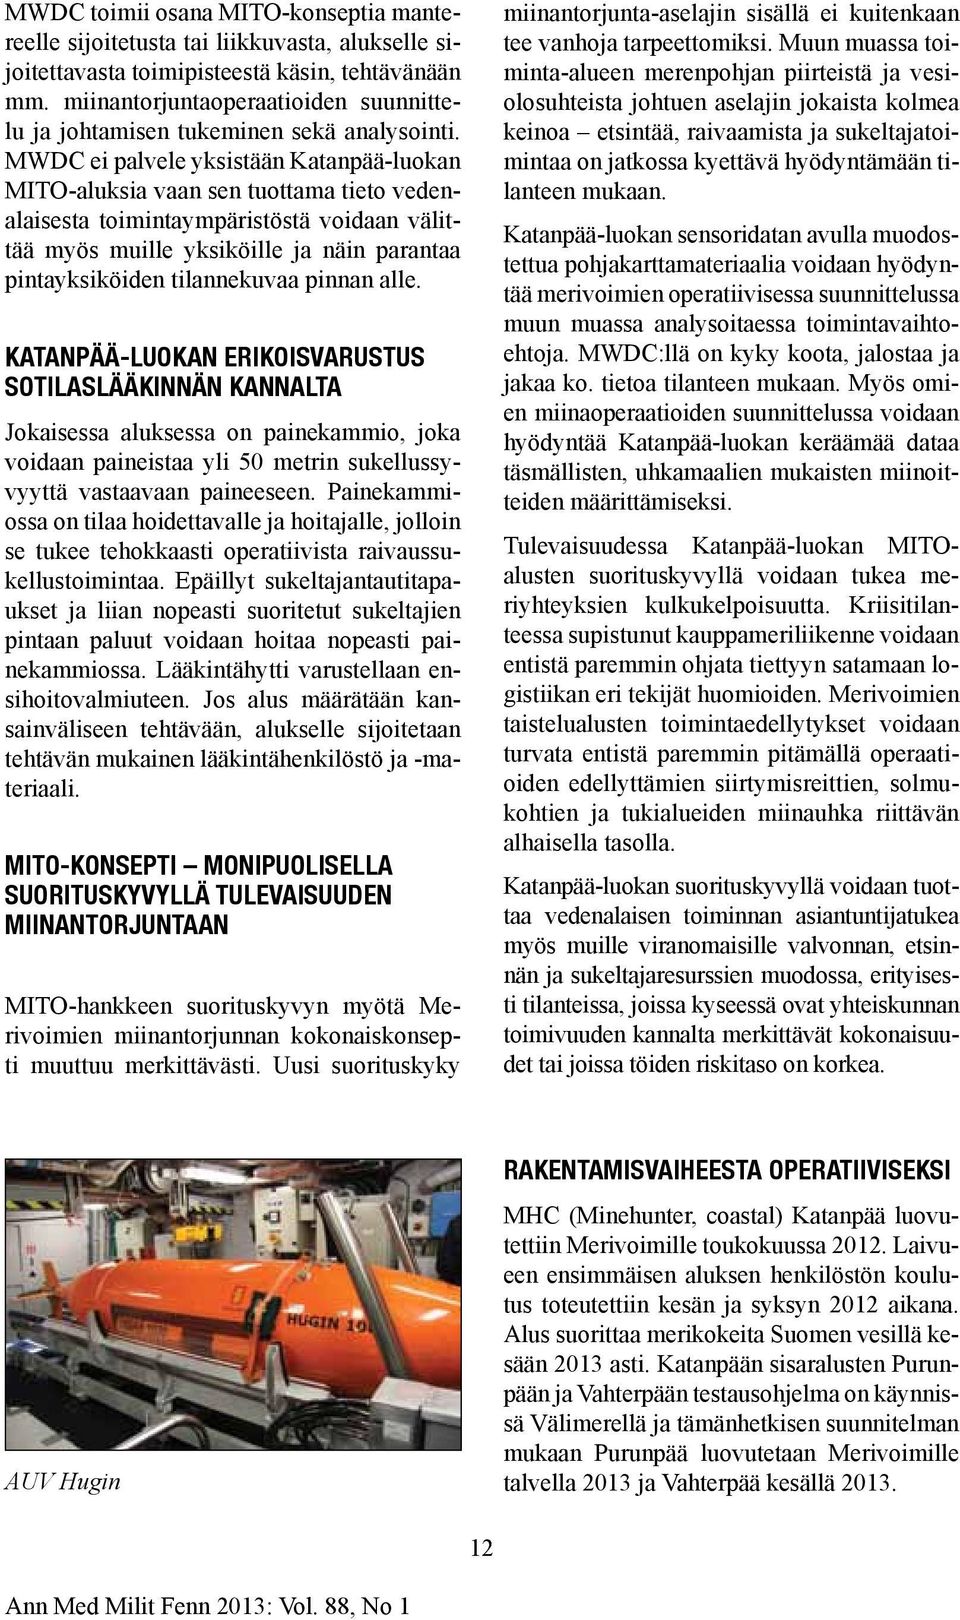 MWDC ei palvele yksistään Katanpää-luokan MITO-aluksia vaan sen tuottama tieto vedenalaisesta toimintaympäristöstä voidaan välittää myös muille yksiköille ja näin parantaa pintayksiköiden